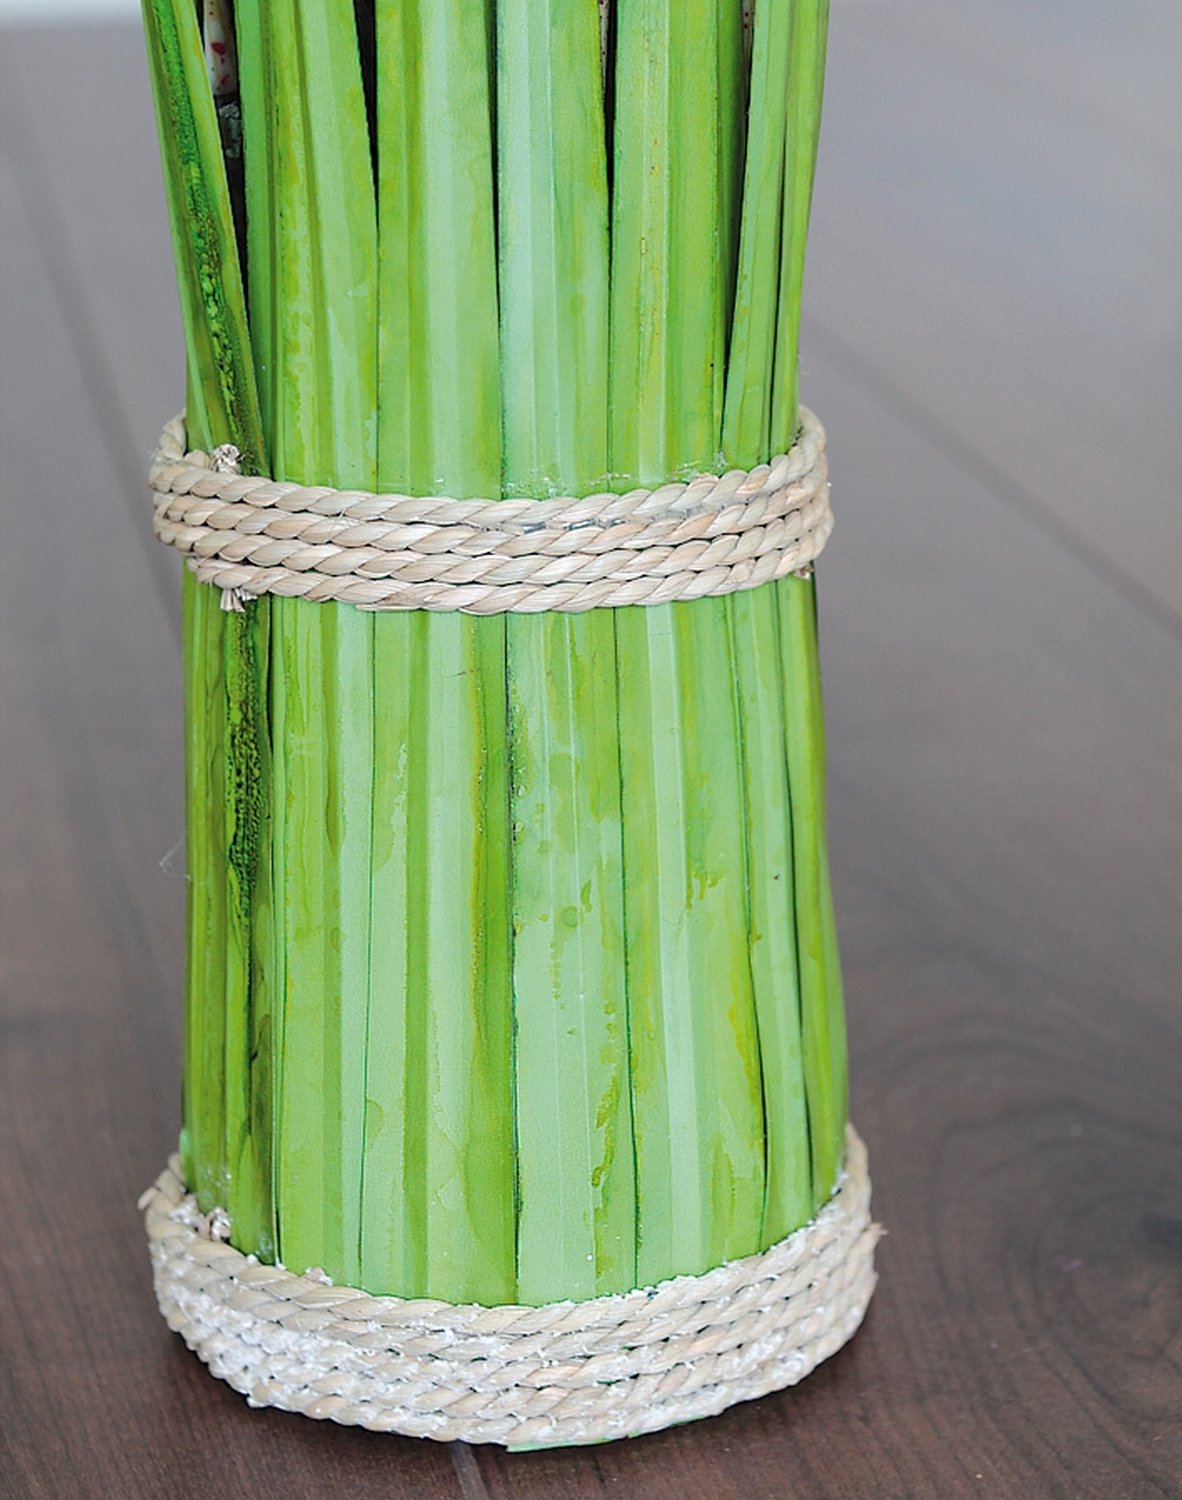 Artificial grass bundle, 180 cm, green